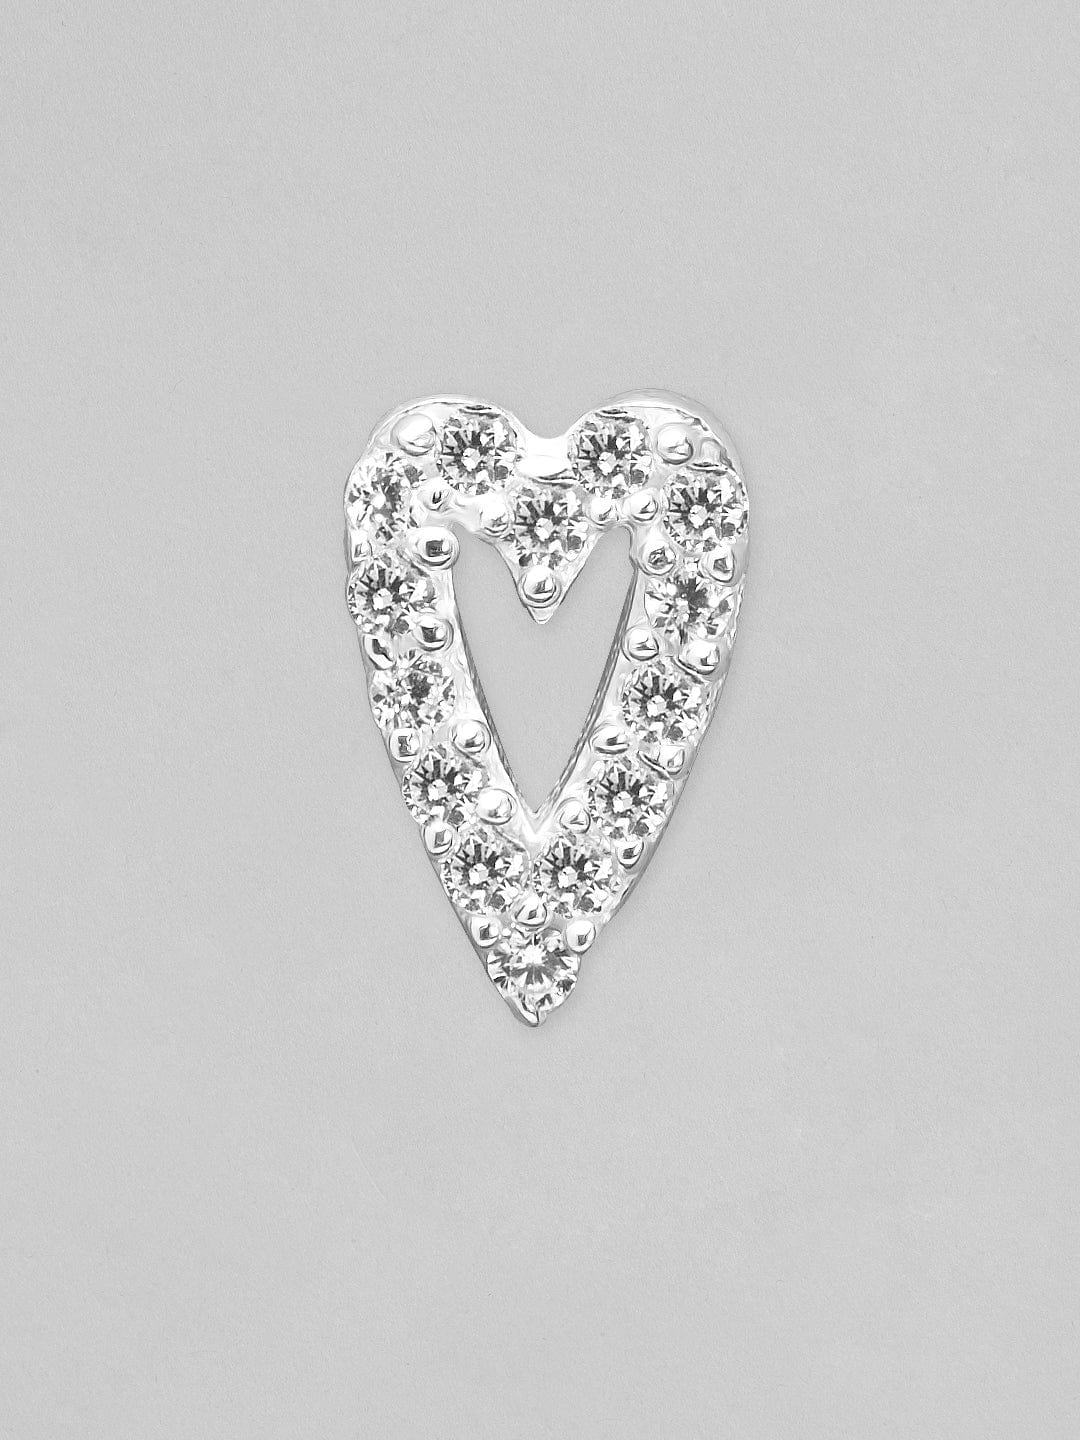 Rubans 925 Silver The Sparkling Silver Heart Stud Earrings. Earrings